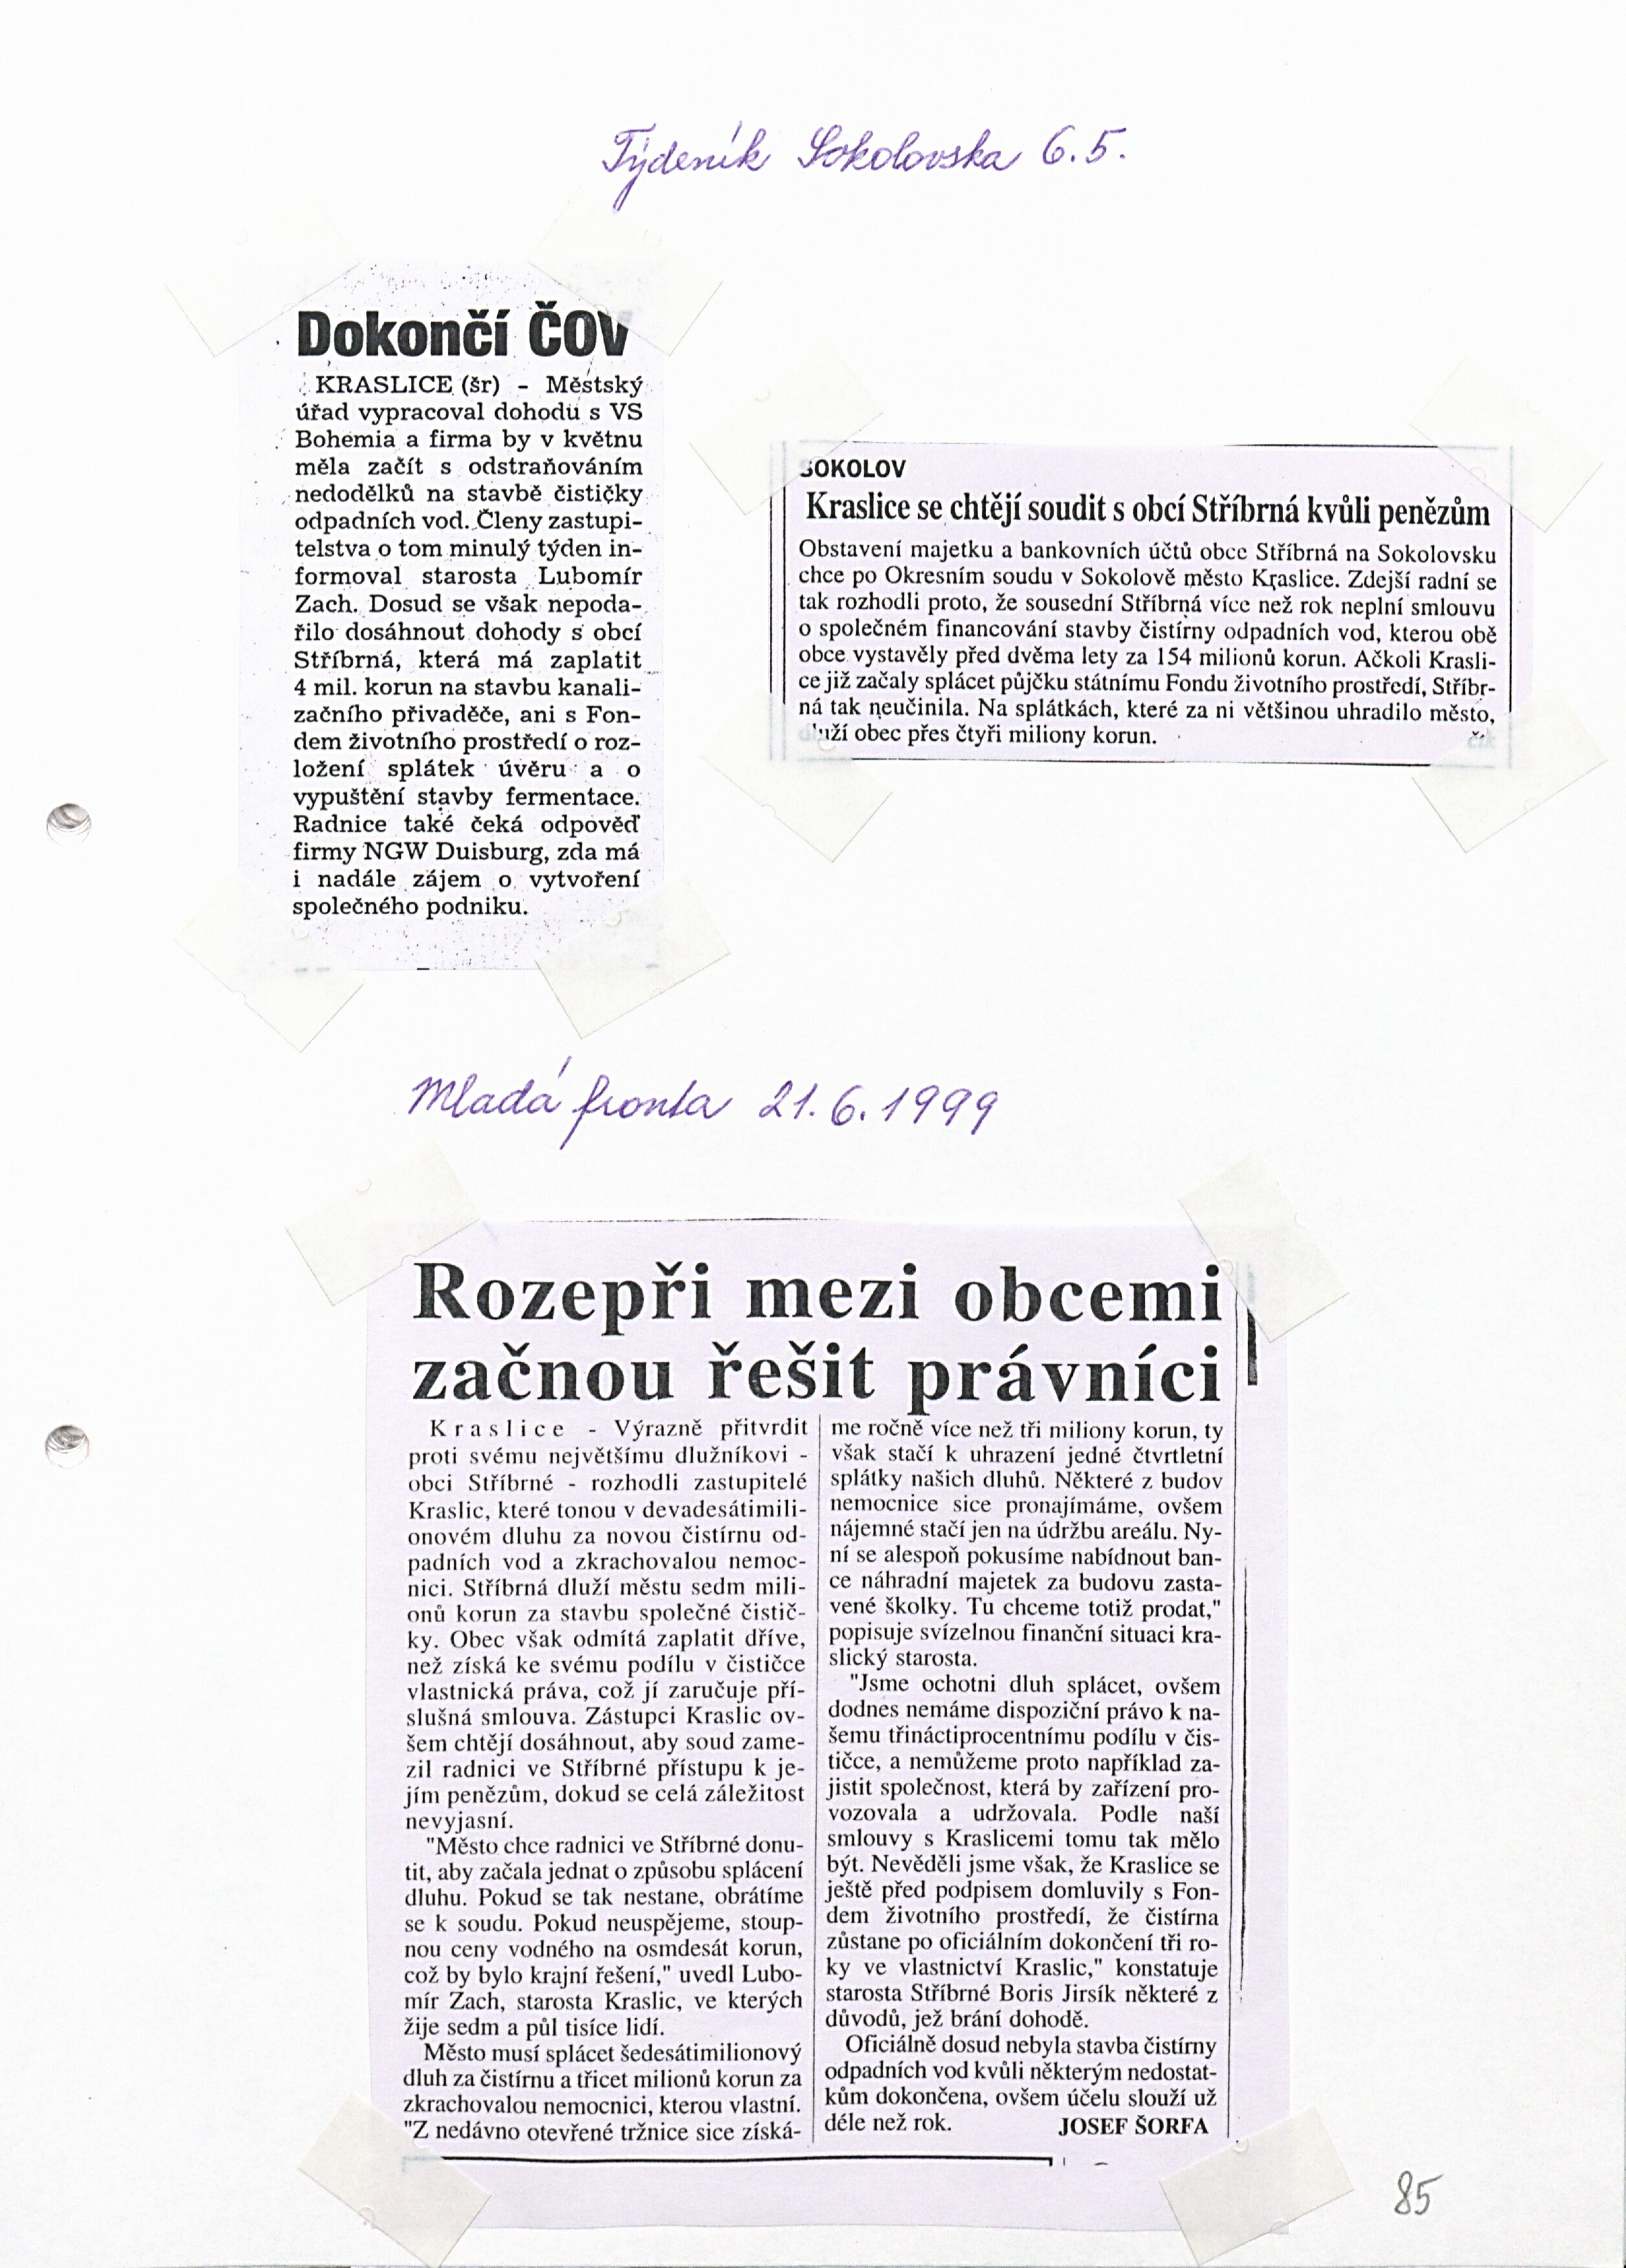 87. soap-so_01331_obec-stribrna-priloha-1997-1999_0870